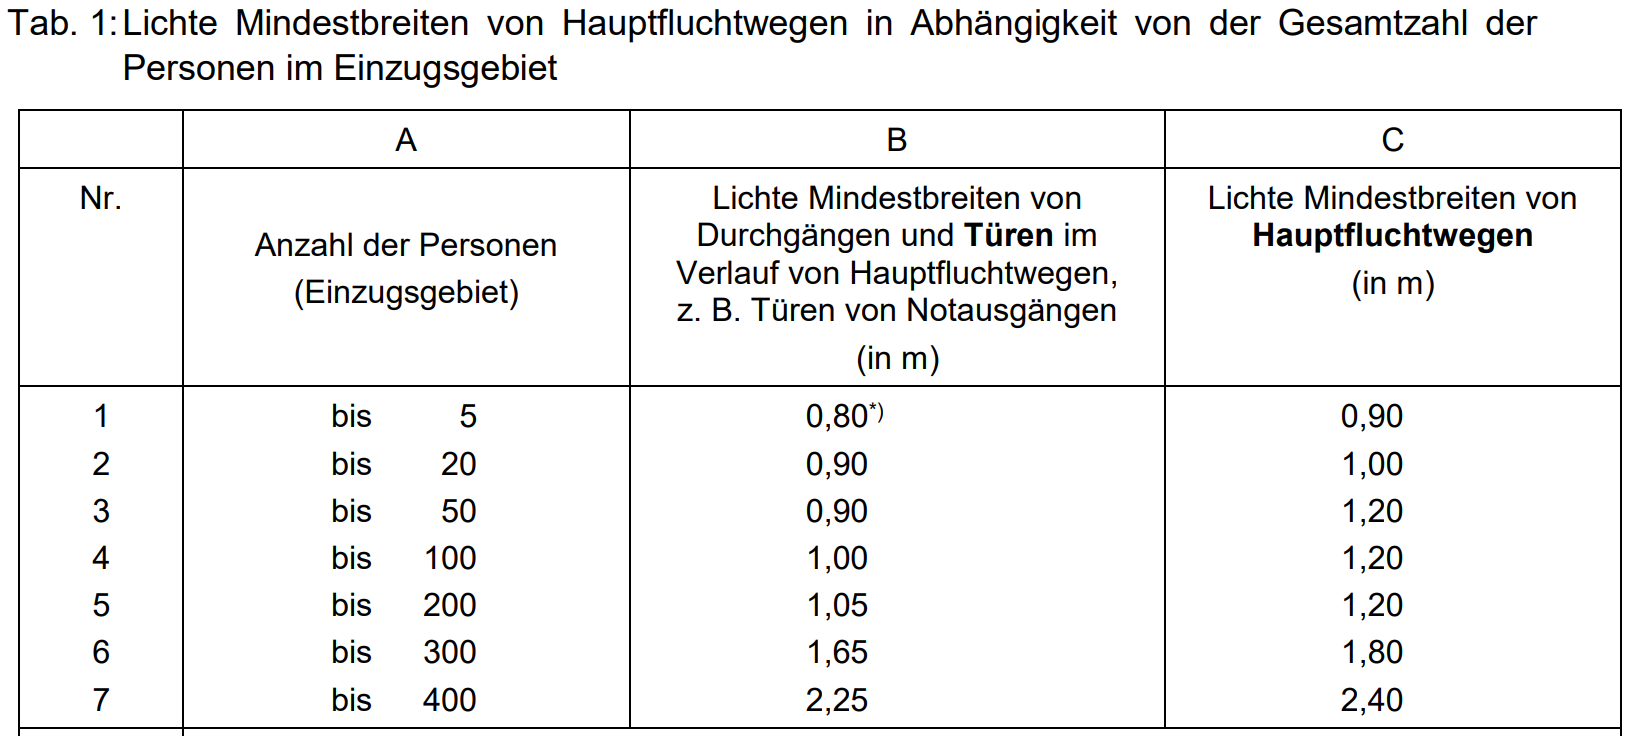 Tabelle Lichte Mindestbreiten von Hauptfluchtwegen in Abhängigkeit von der Gesamtzahl der Personen im Einzugsgebiet